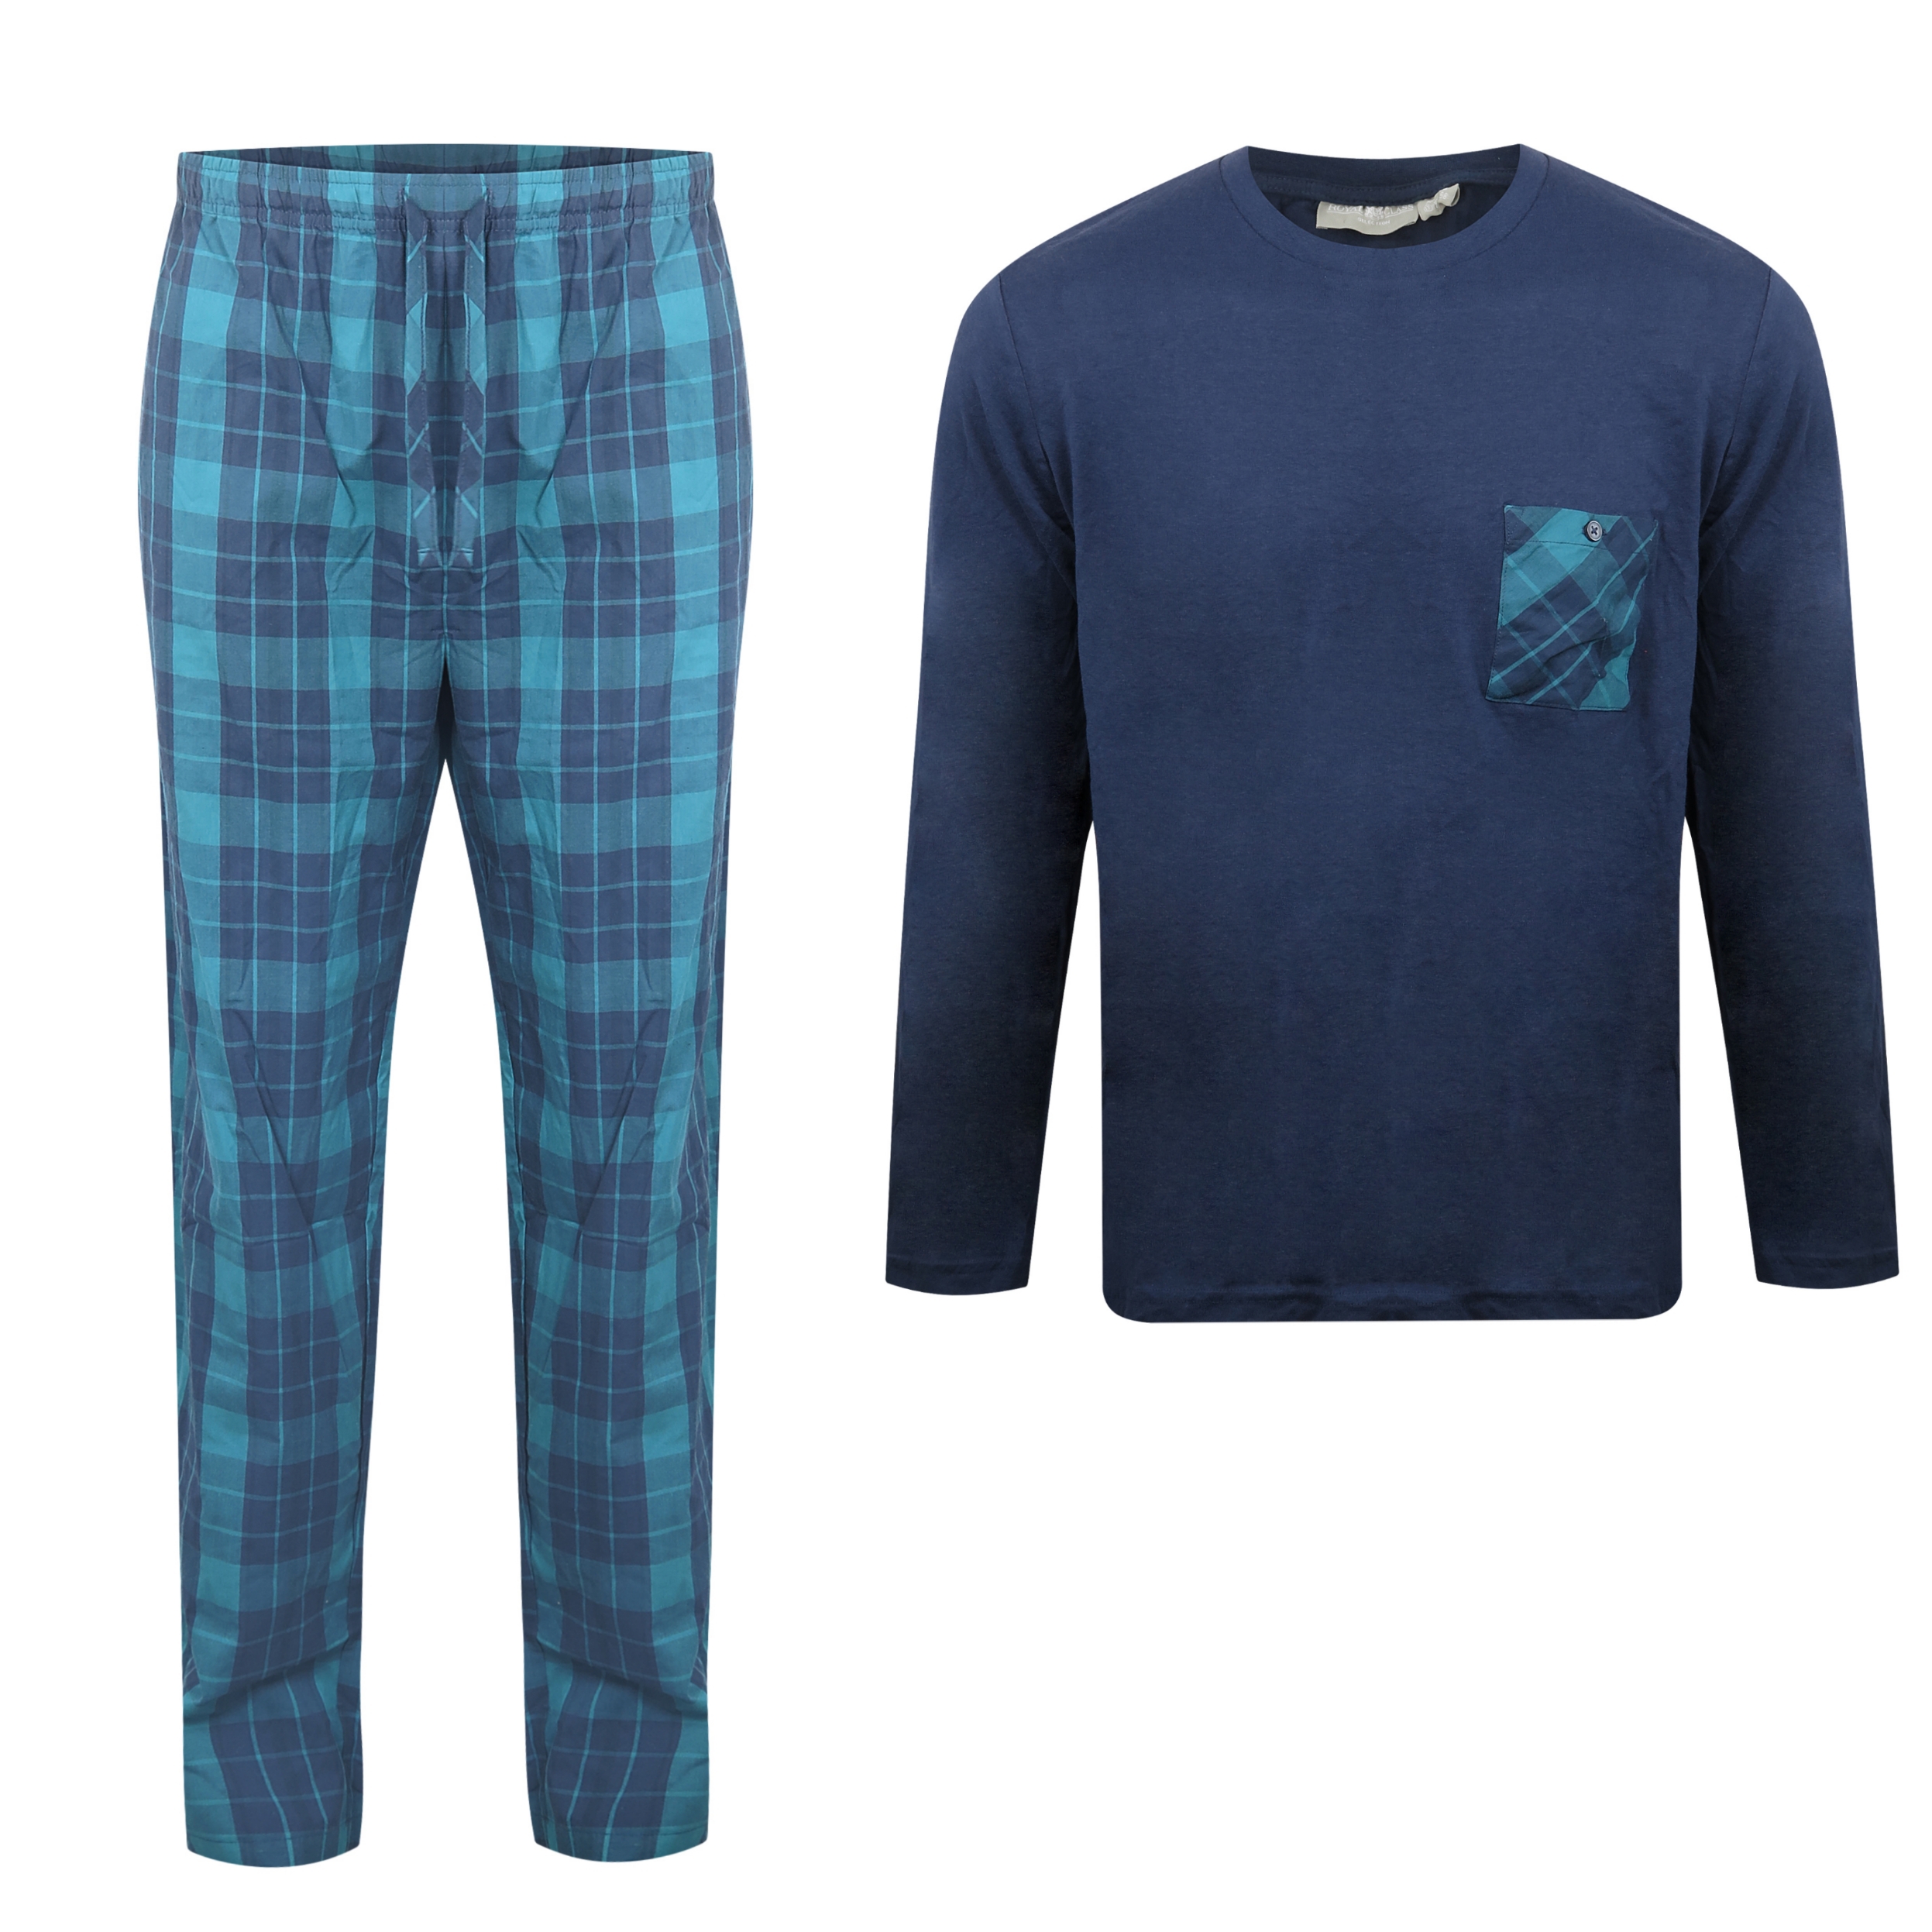 ست تی شرت و شلوار مردانه رویال کلس مدل PyjamaHome4